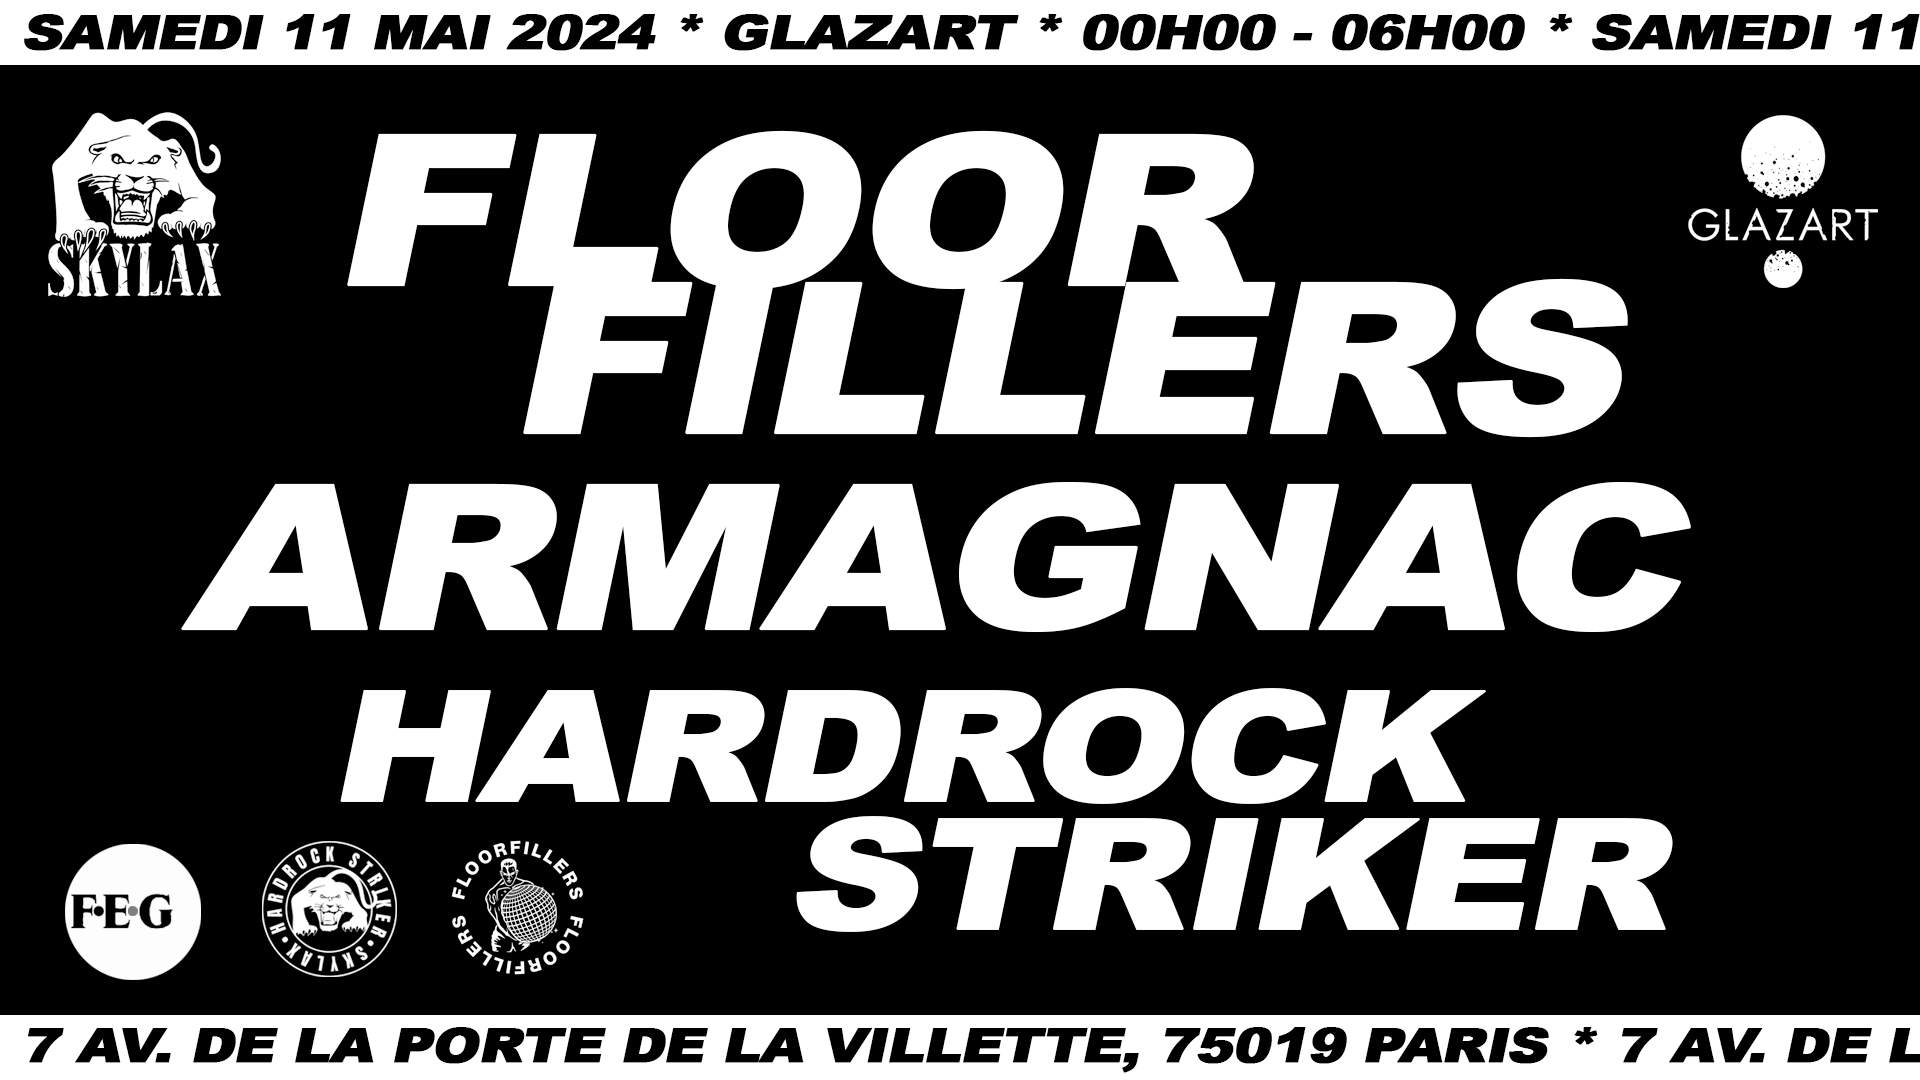 SKYLAX x Glazart: Floorfillers, Armagnac, Hardrock Striker - フライヤー表